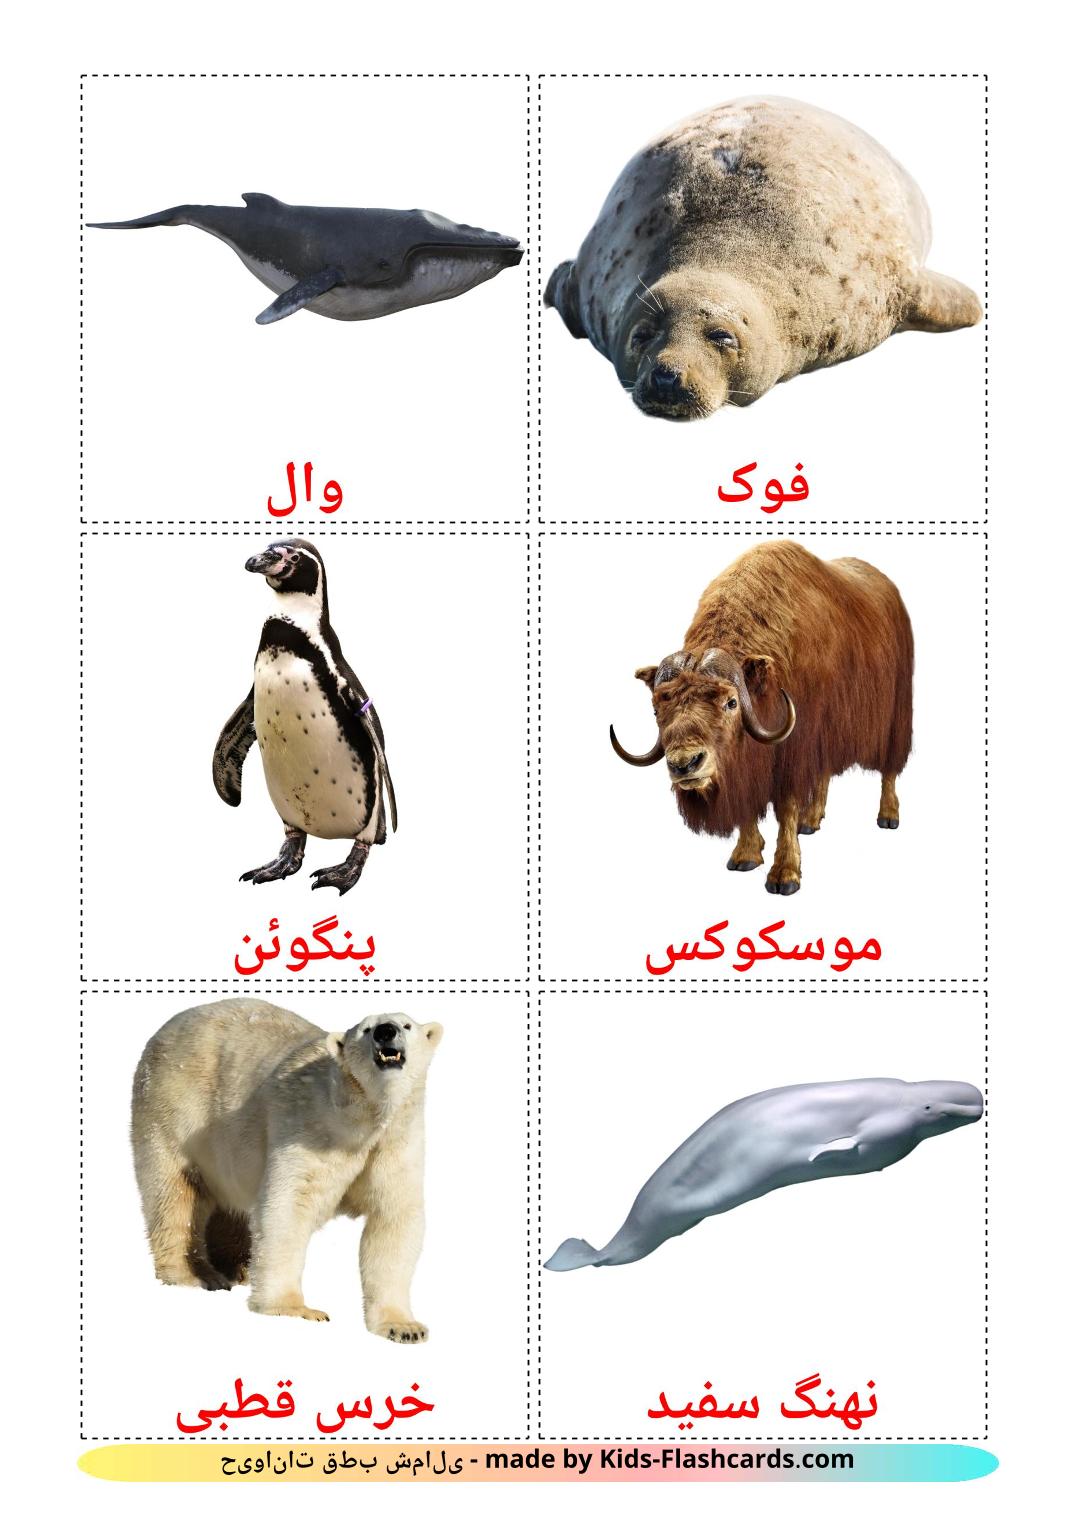 Animais do Ártico - 14 Flashcards persaes gratuitos para impressão